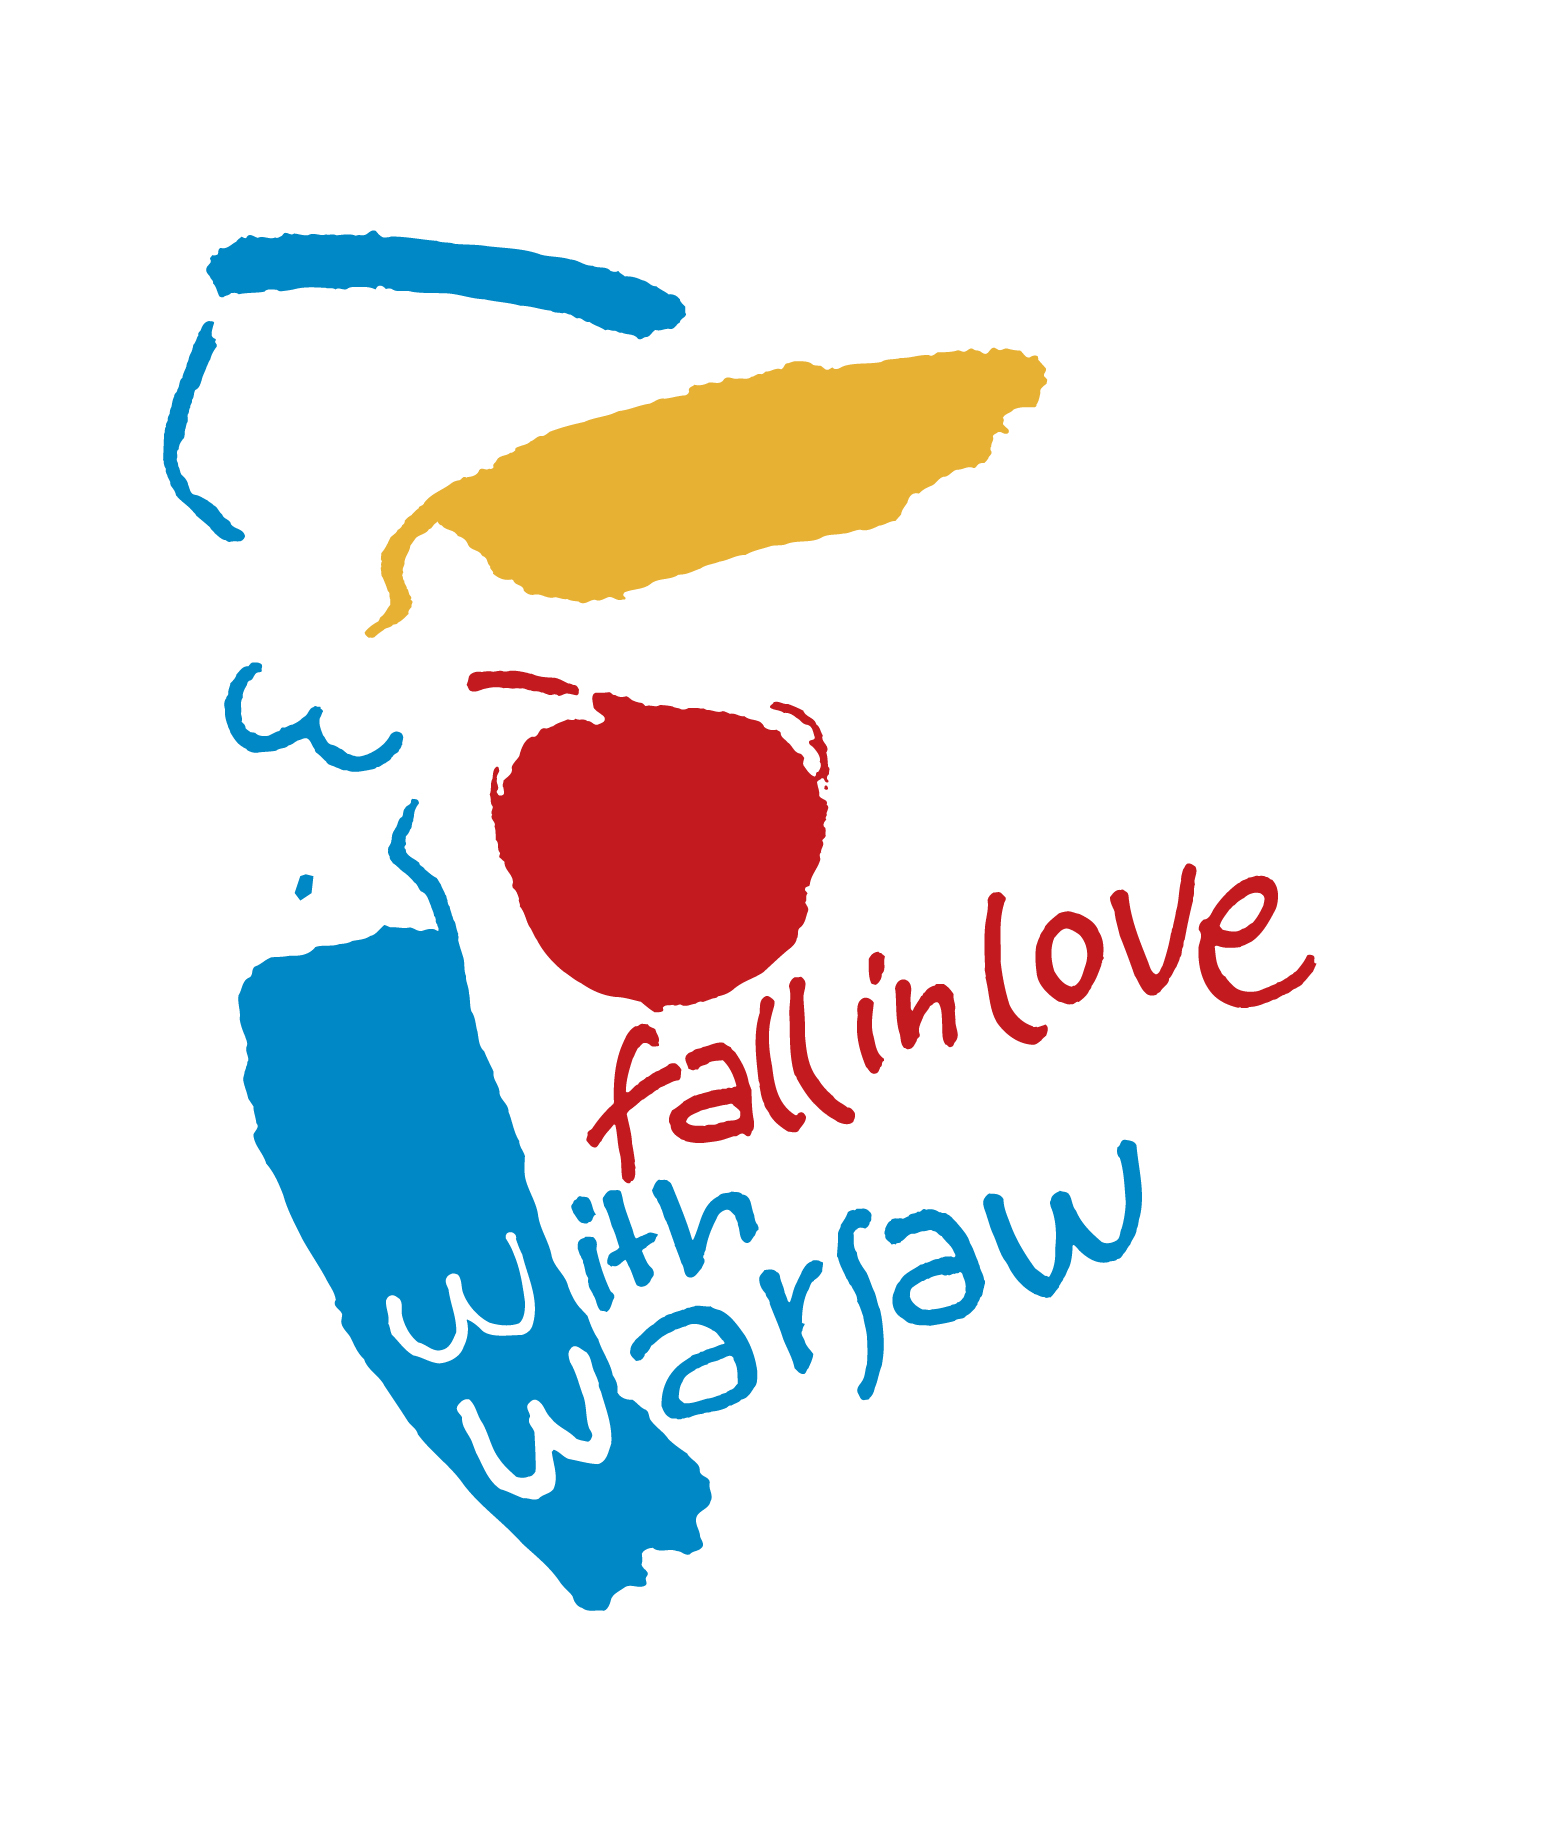 m.st. Warszawy - Zakochaj się w Warszawie